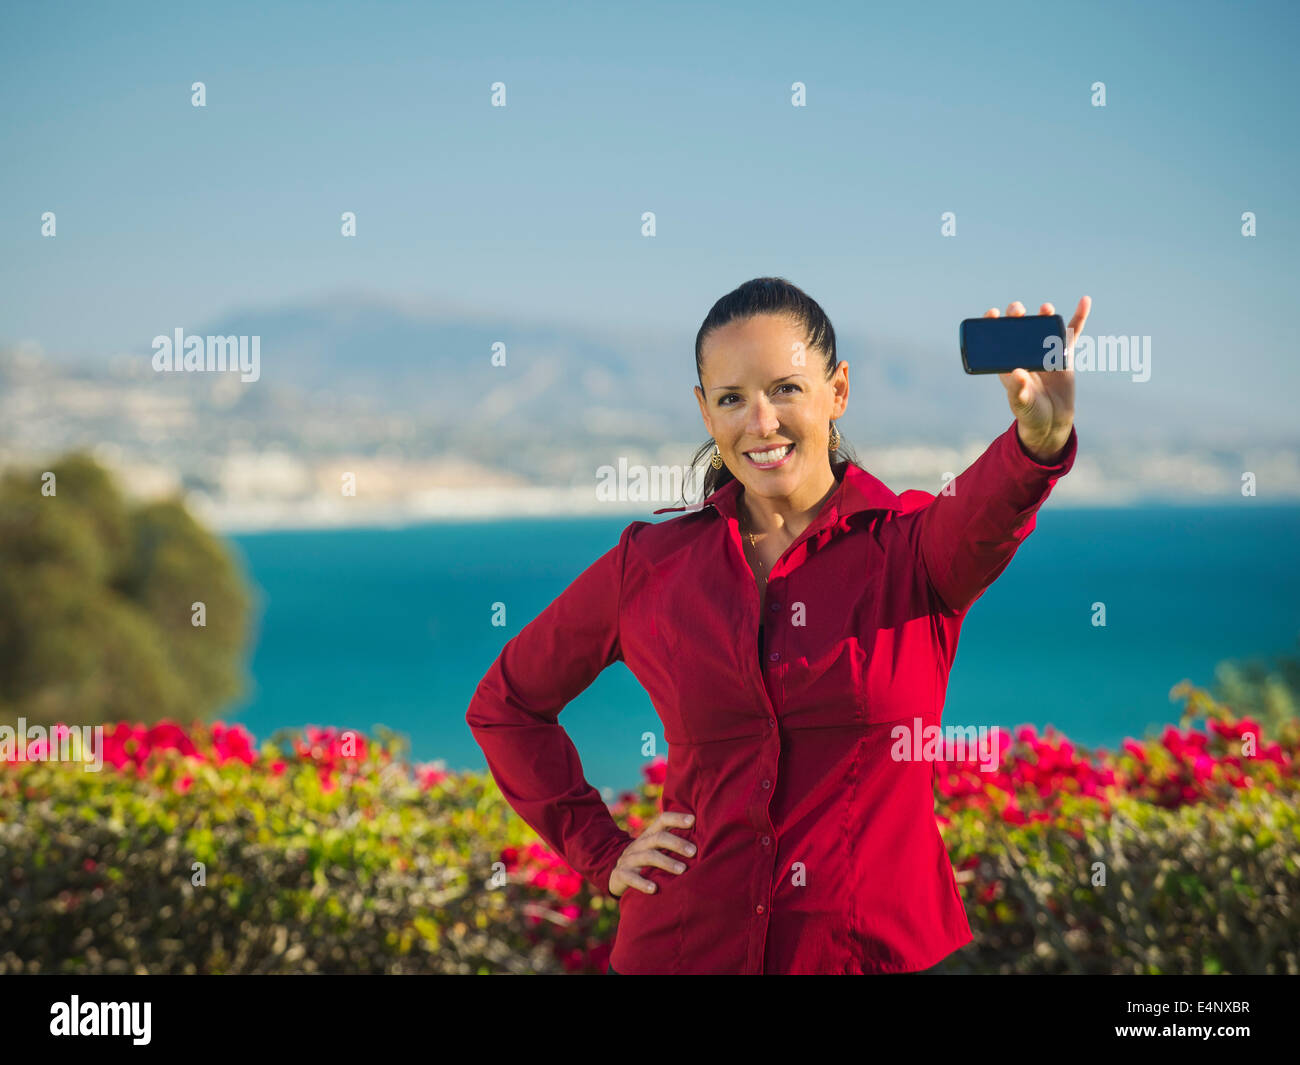 États-unis, Californie, Dana Point, Portrait of smiling woman holding smartphone Banque D'Images